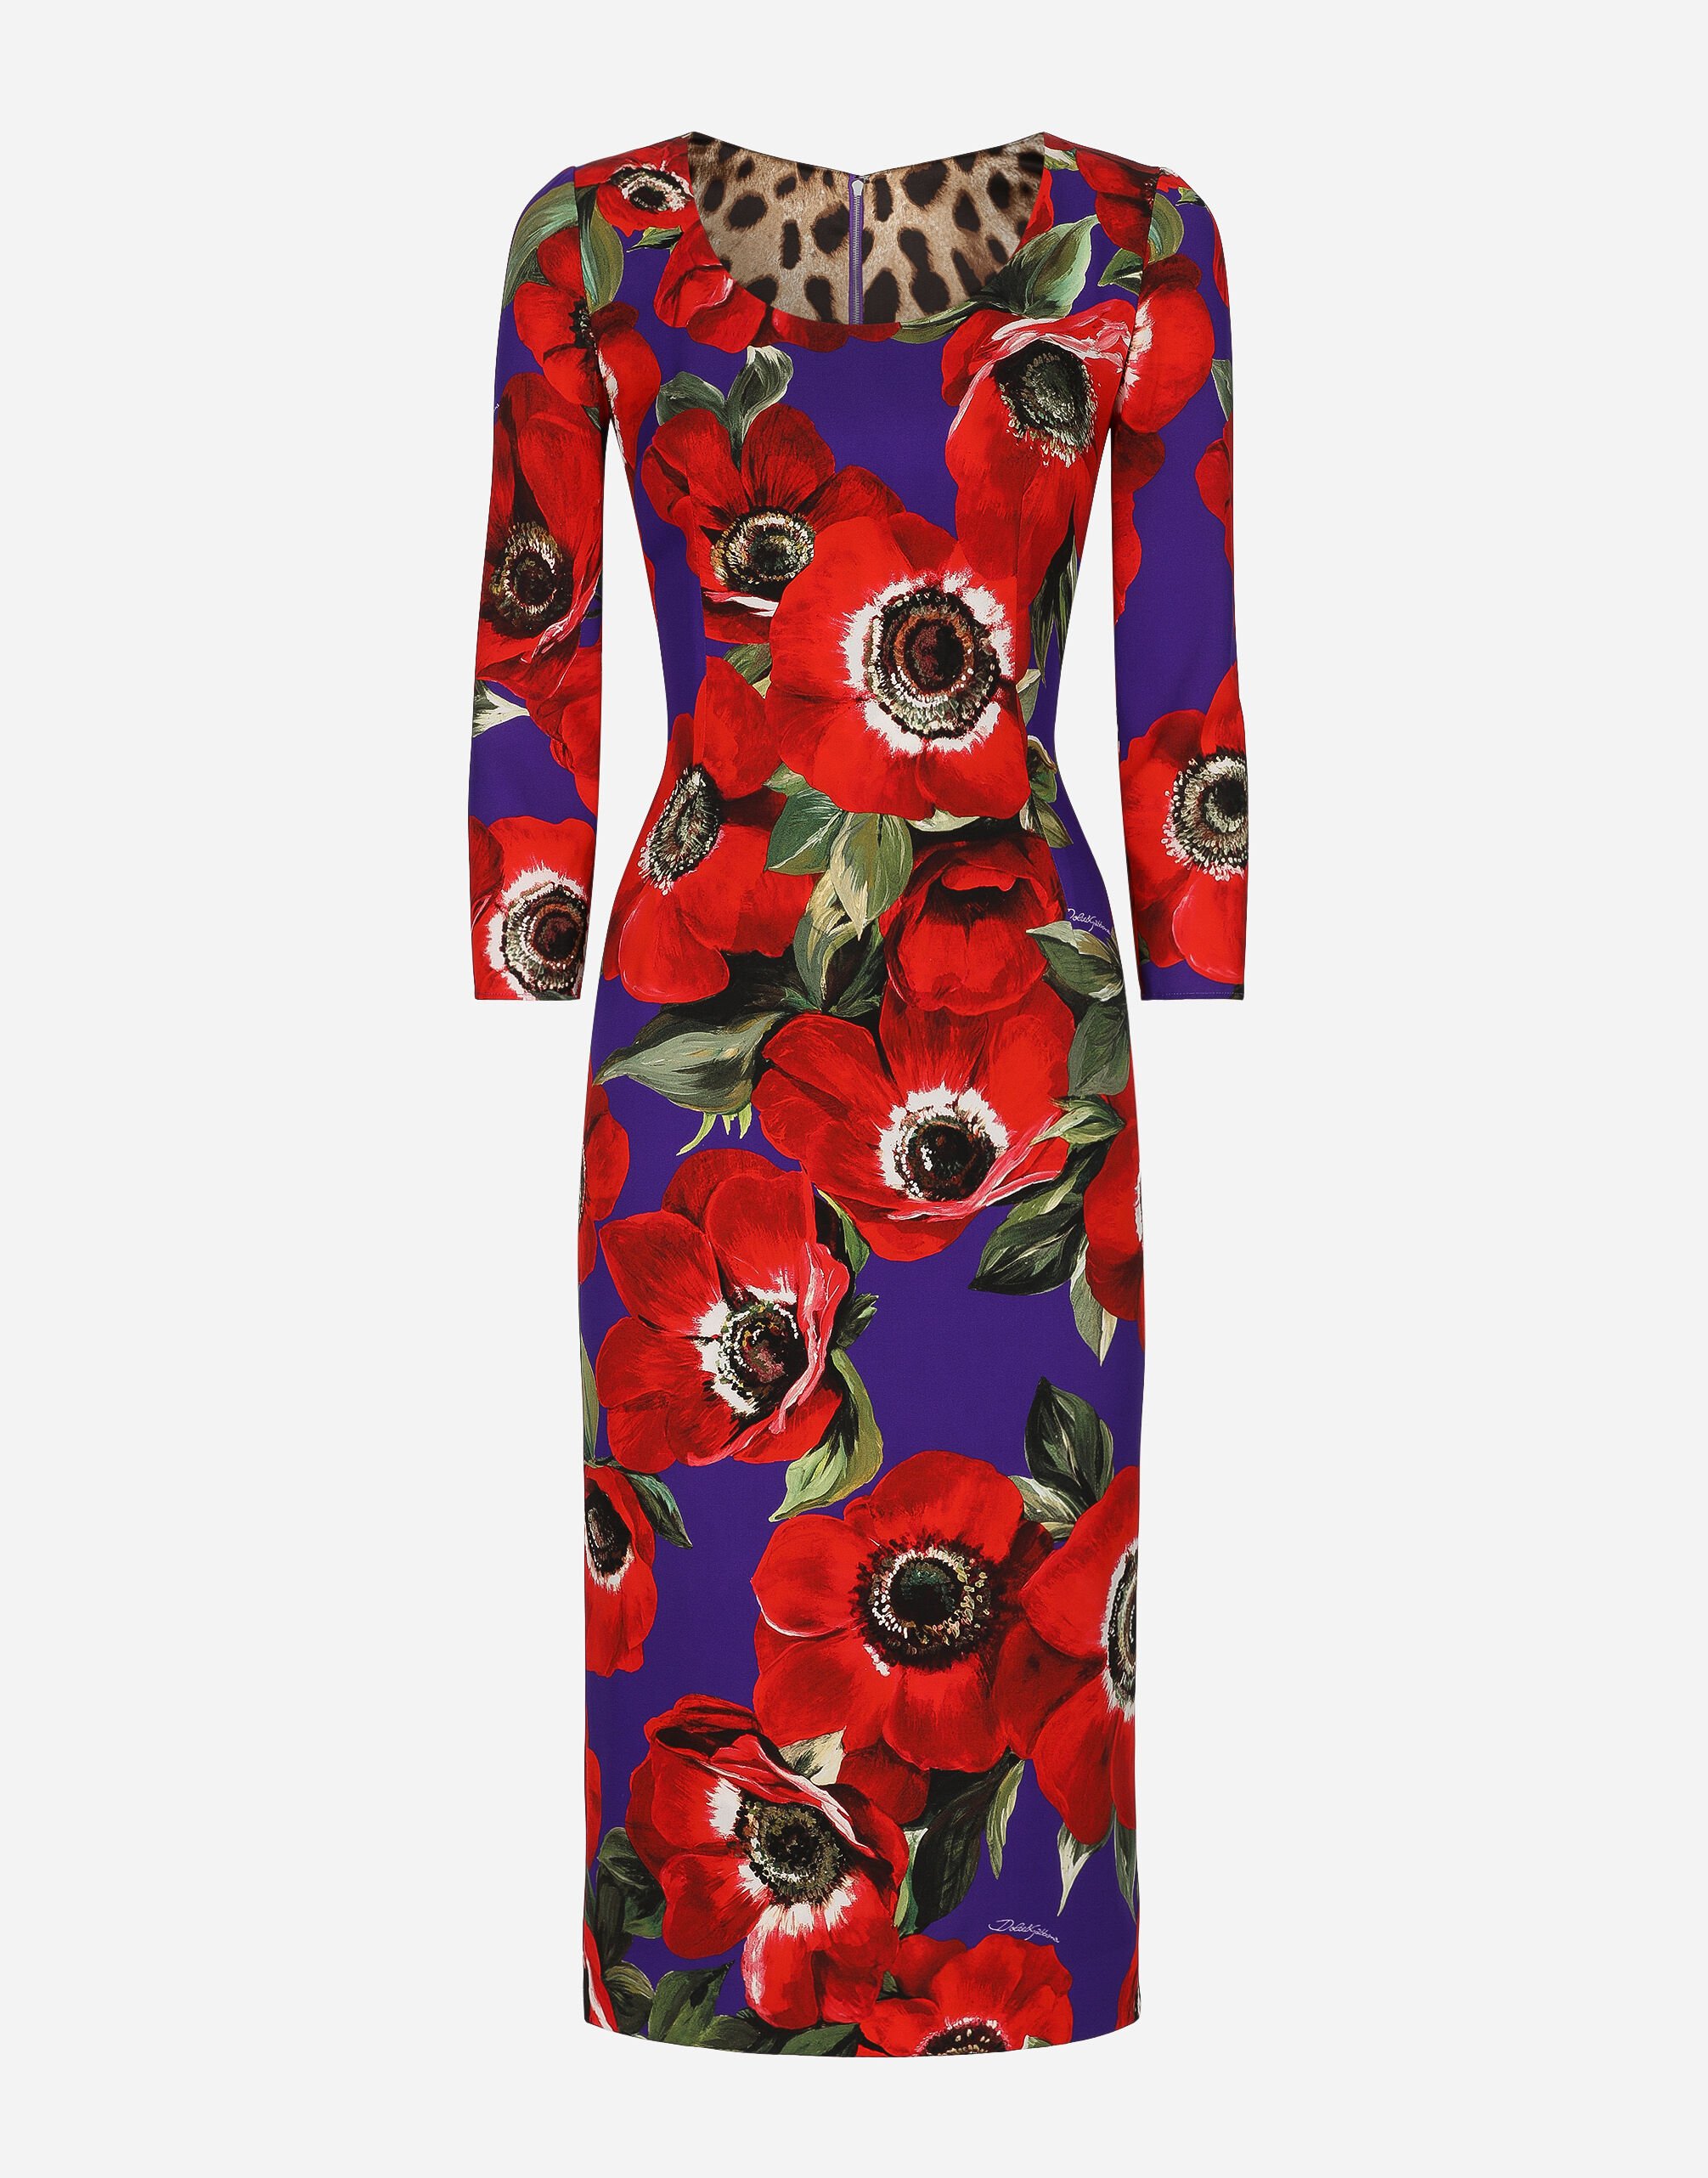 Dress du Jour: Keira Knightley's Heart-Print Dolce & Gabbana Dress